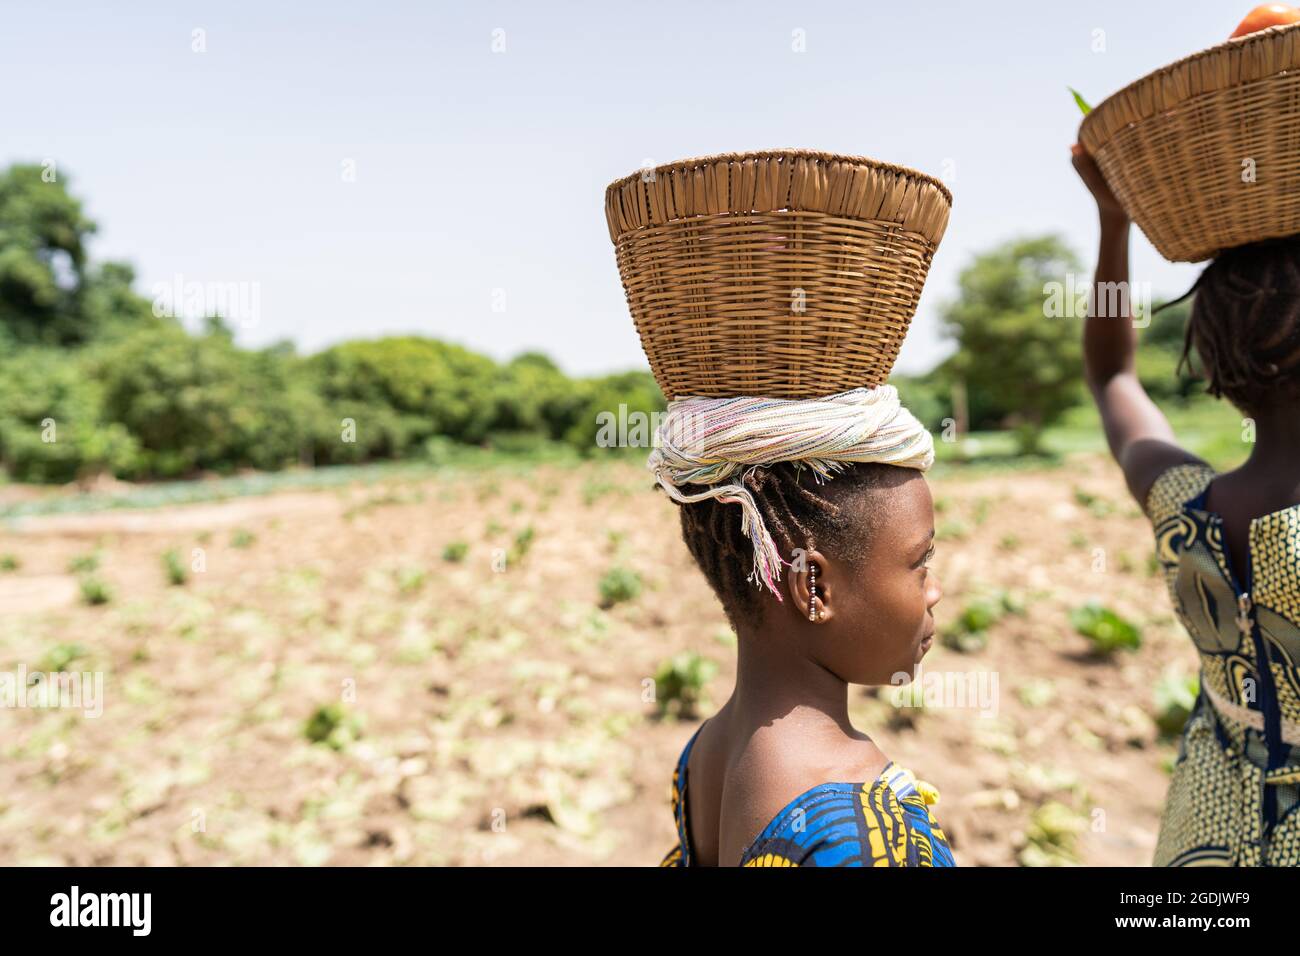 Vue partielle d'un groupe de filles africaines noires qui équilient des paniers de paille sur leur tête; concept de travail des enfants Banque D'Images